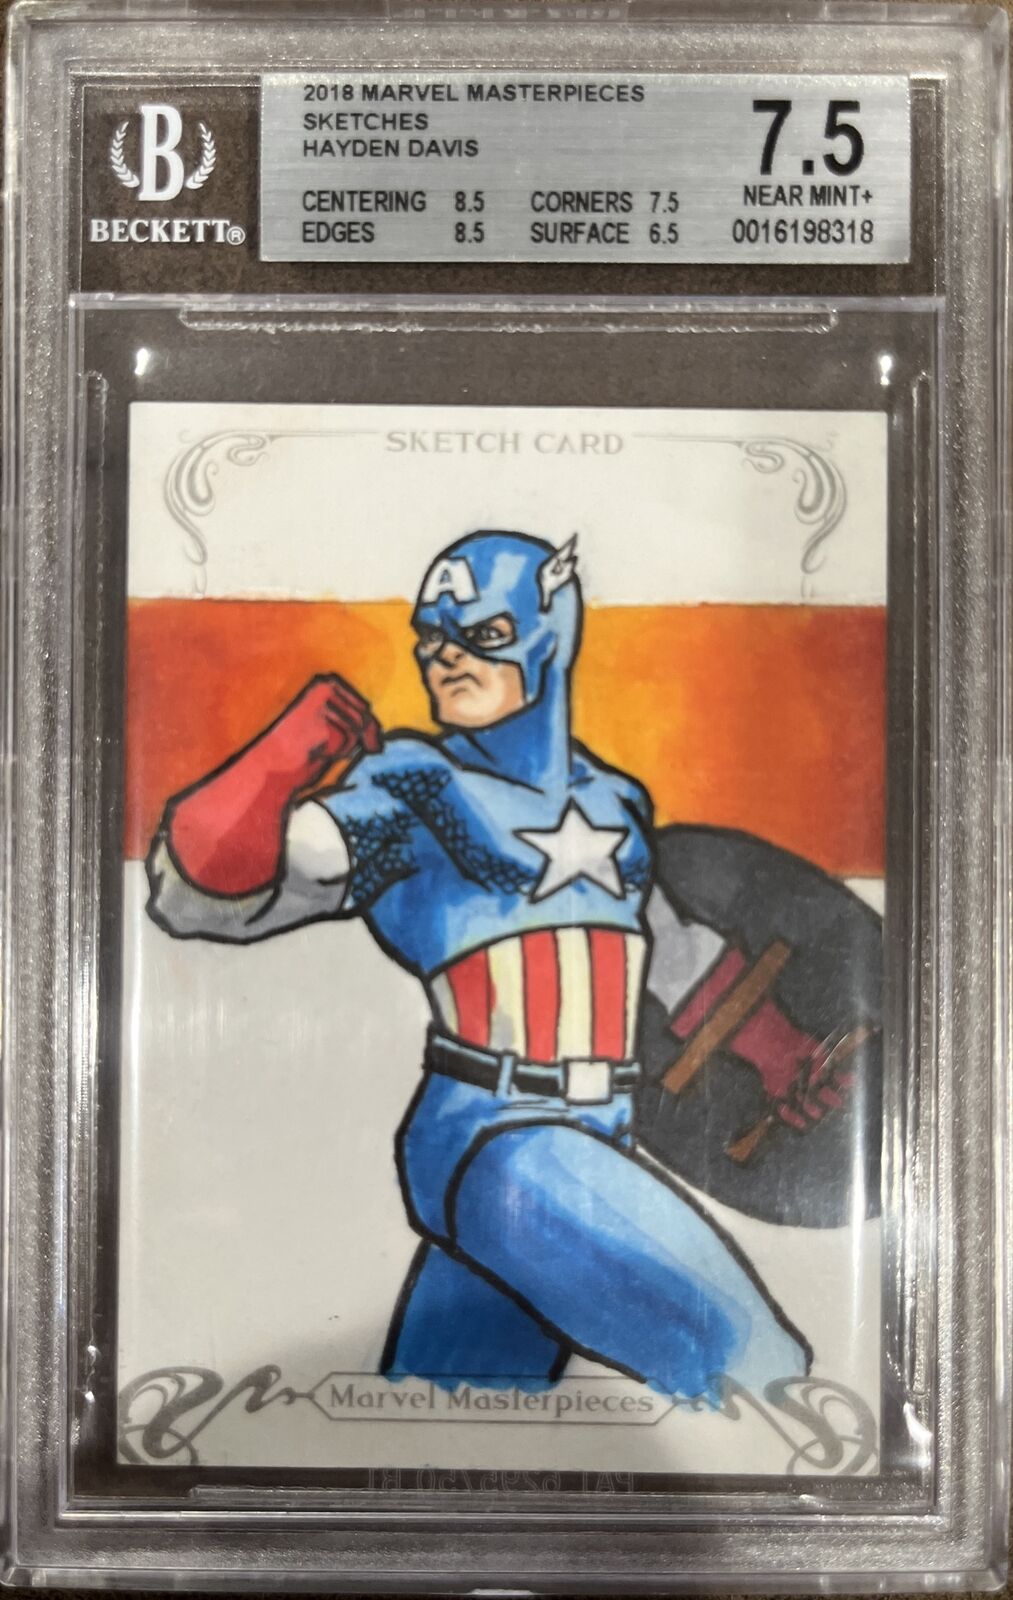 2018 Marvel Masterpieces Sketch Card Captain America 1/1 Hayden Davis BGS 7.5